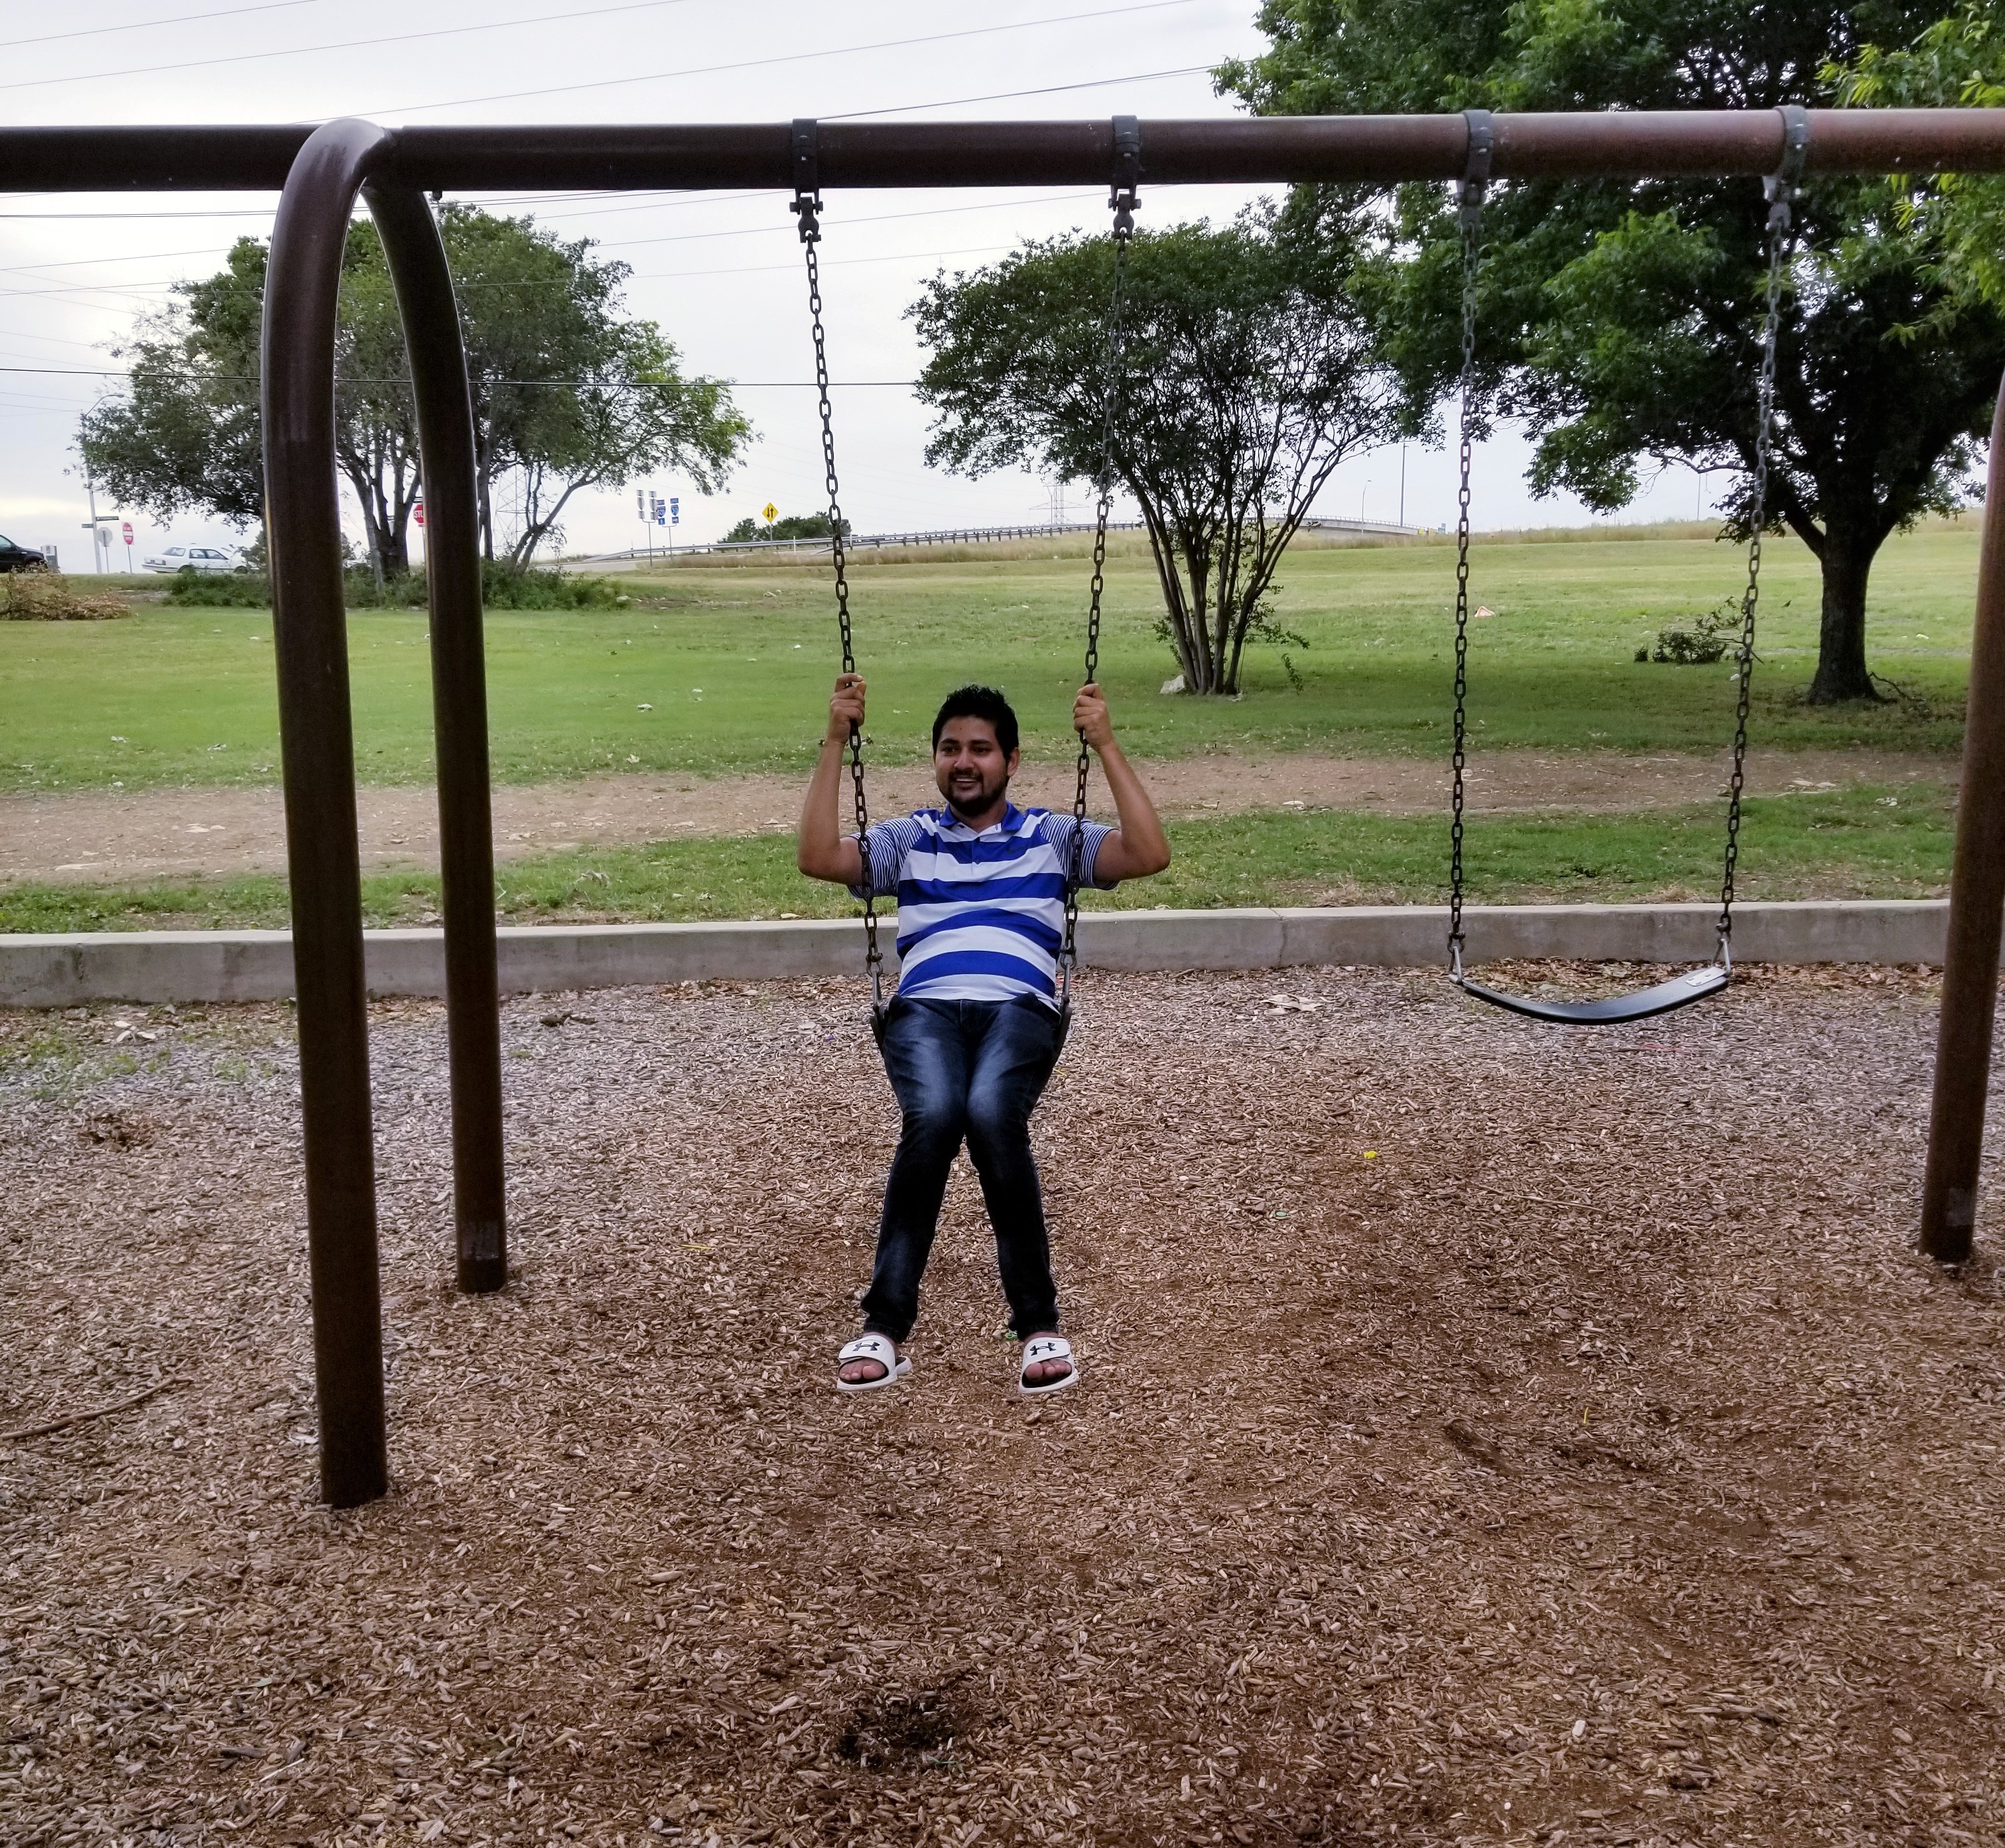 me on swing.jpg